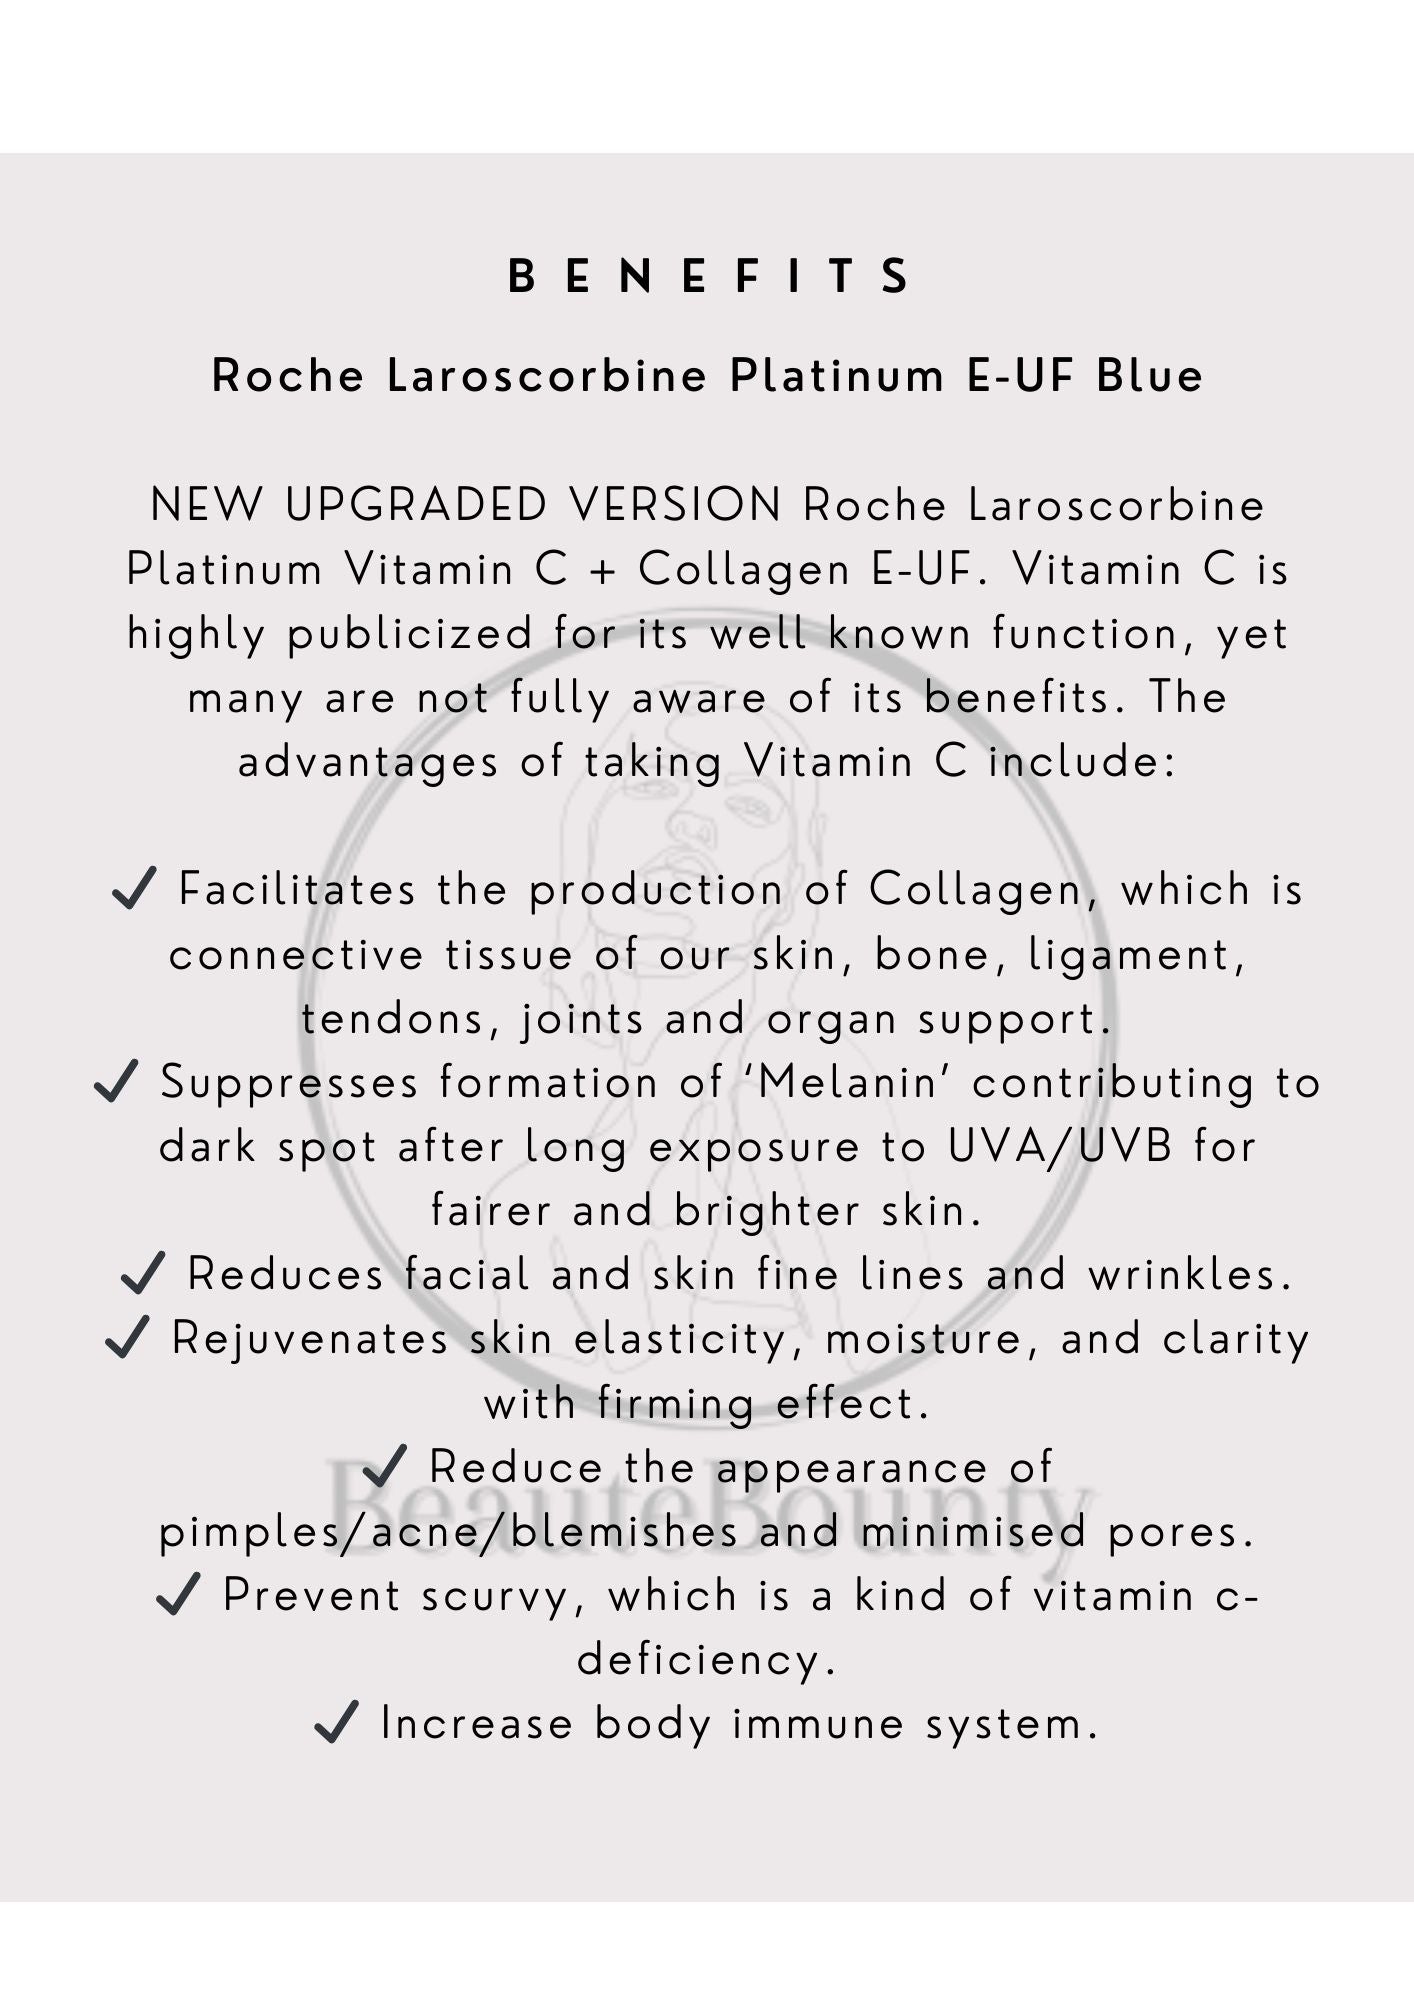 Roche Laroscorbine Platinum E-UF Blue